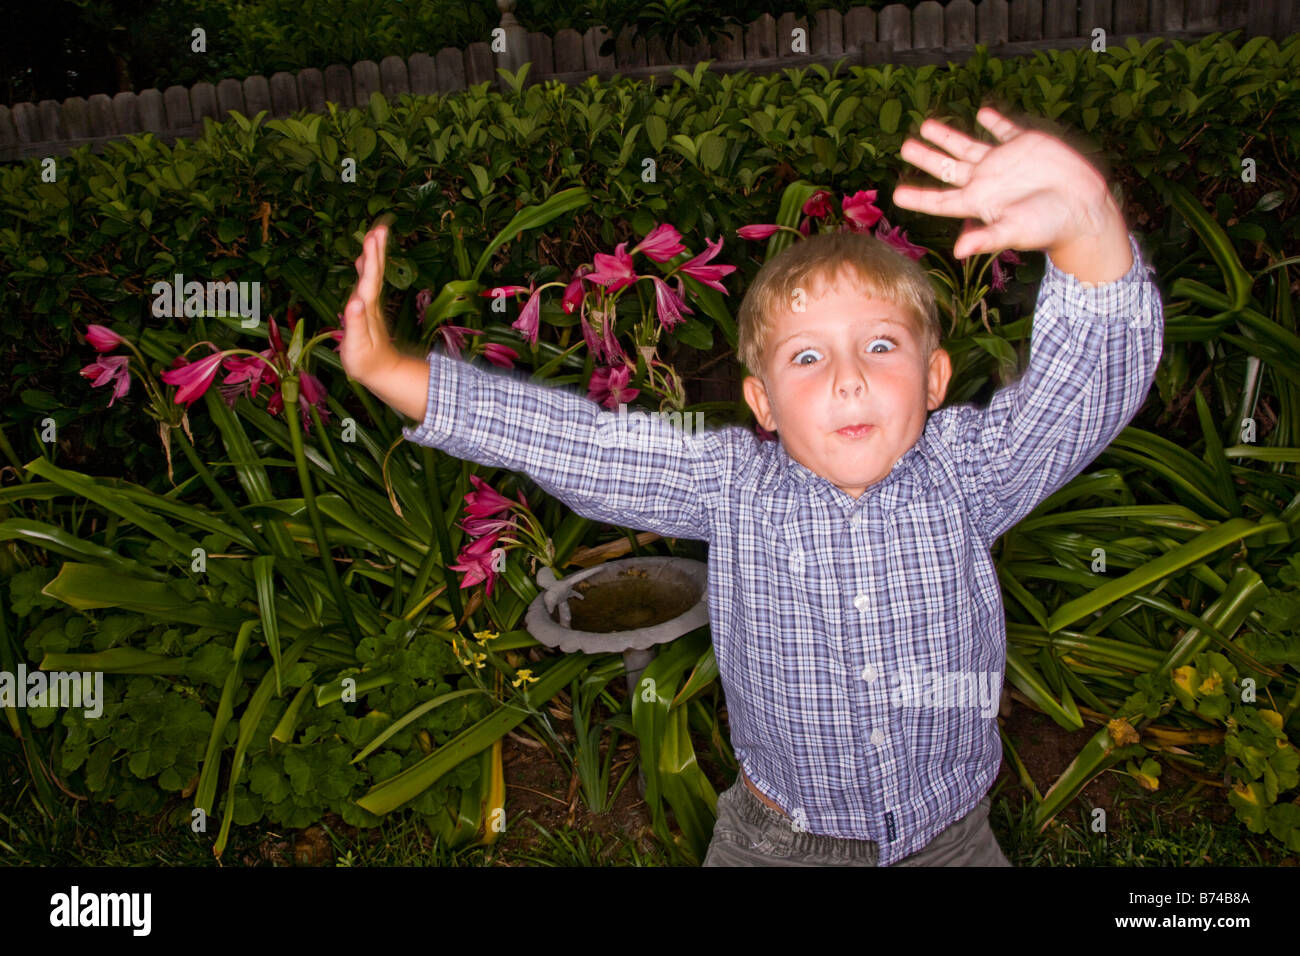 Boy making faces in garden Stock Photo